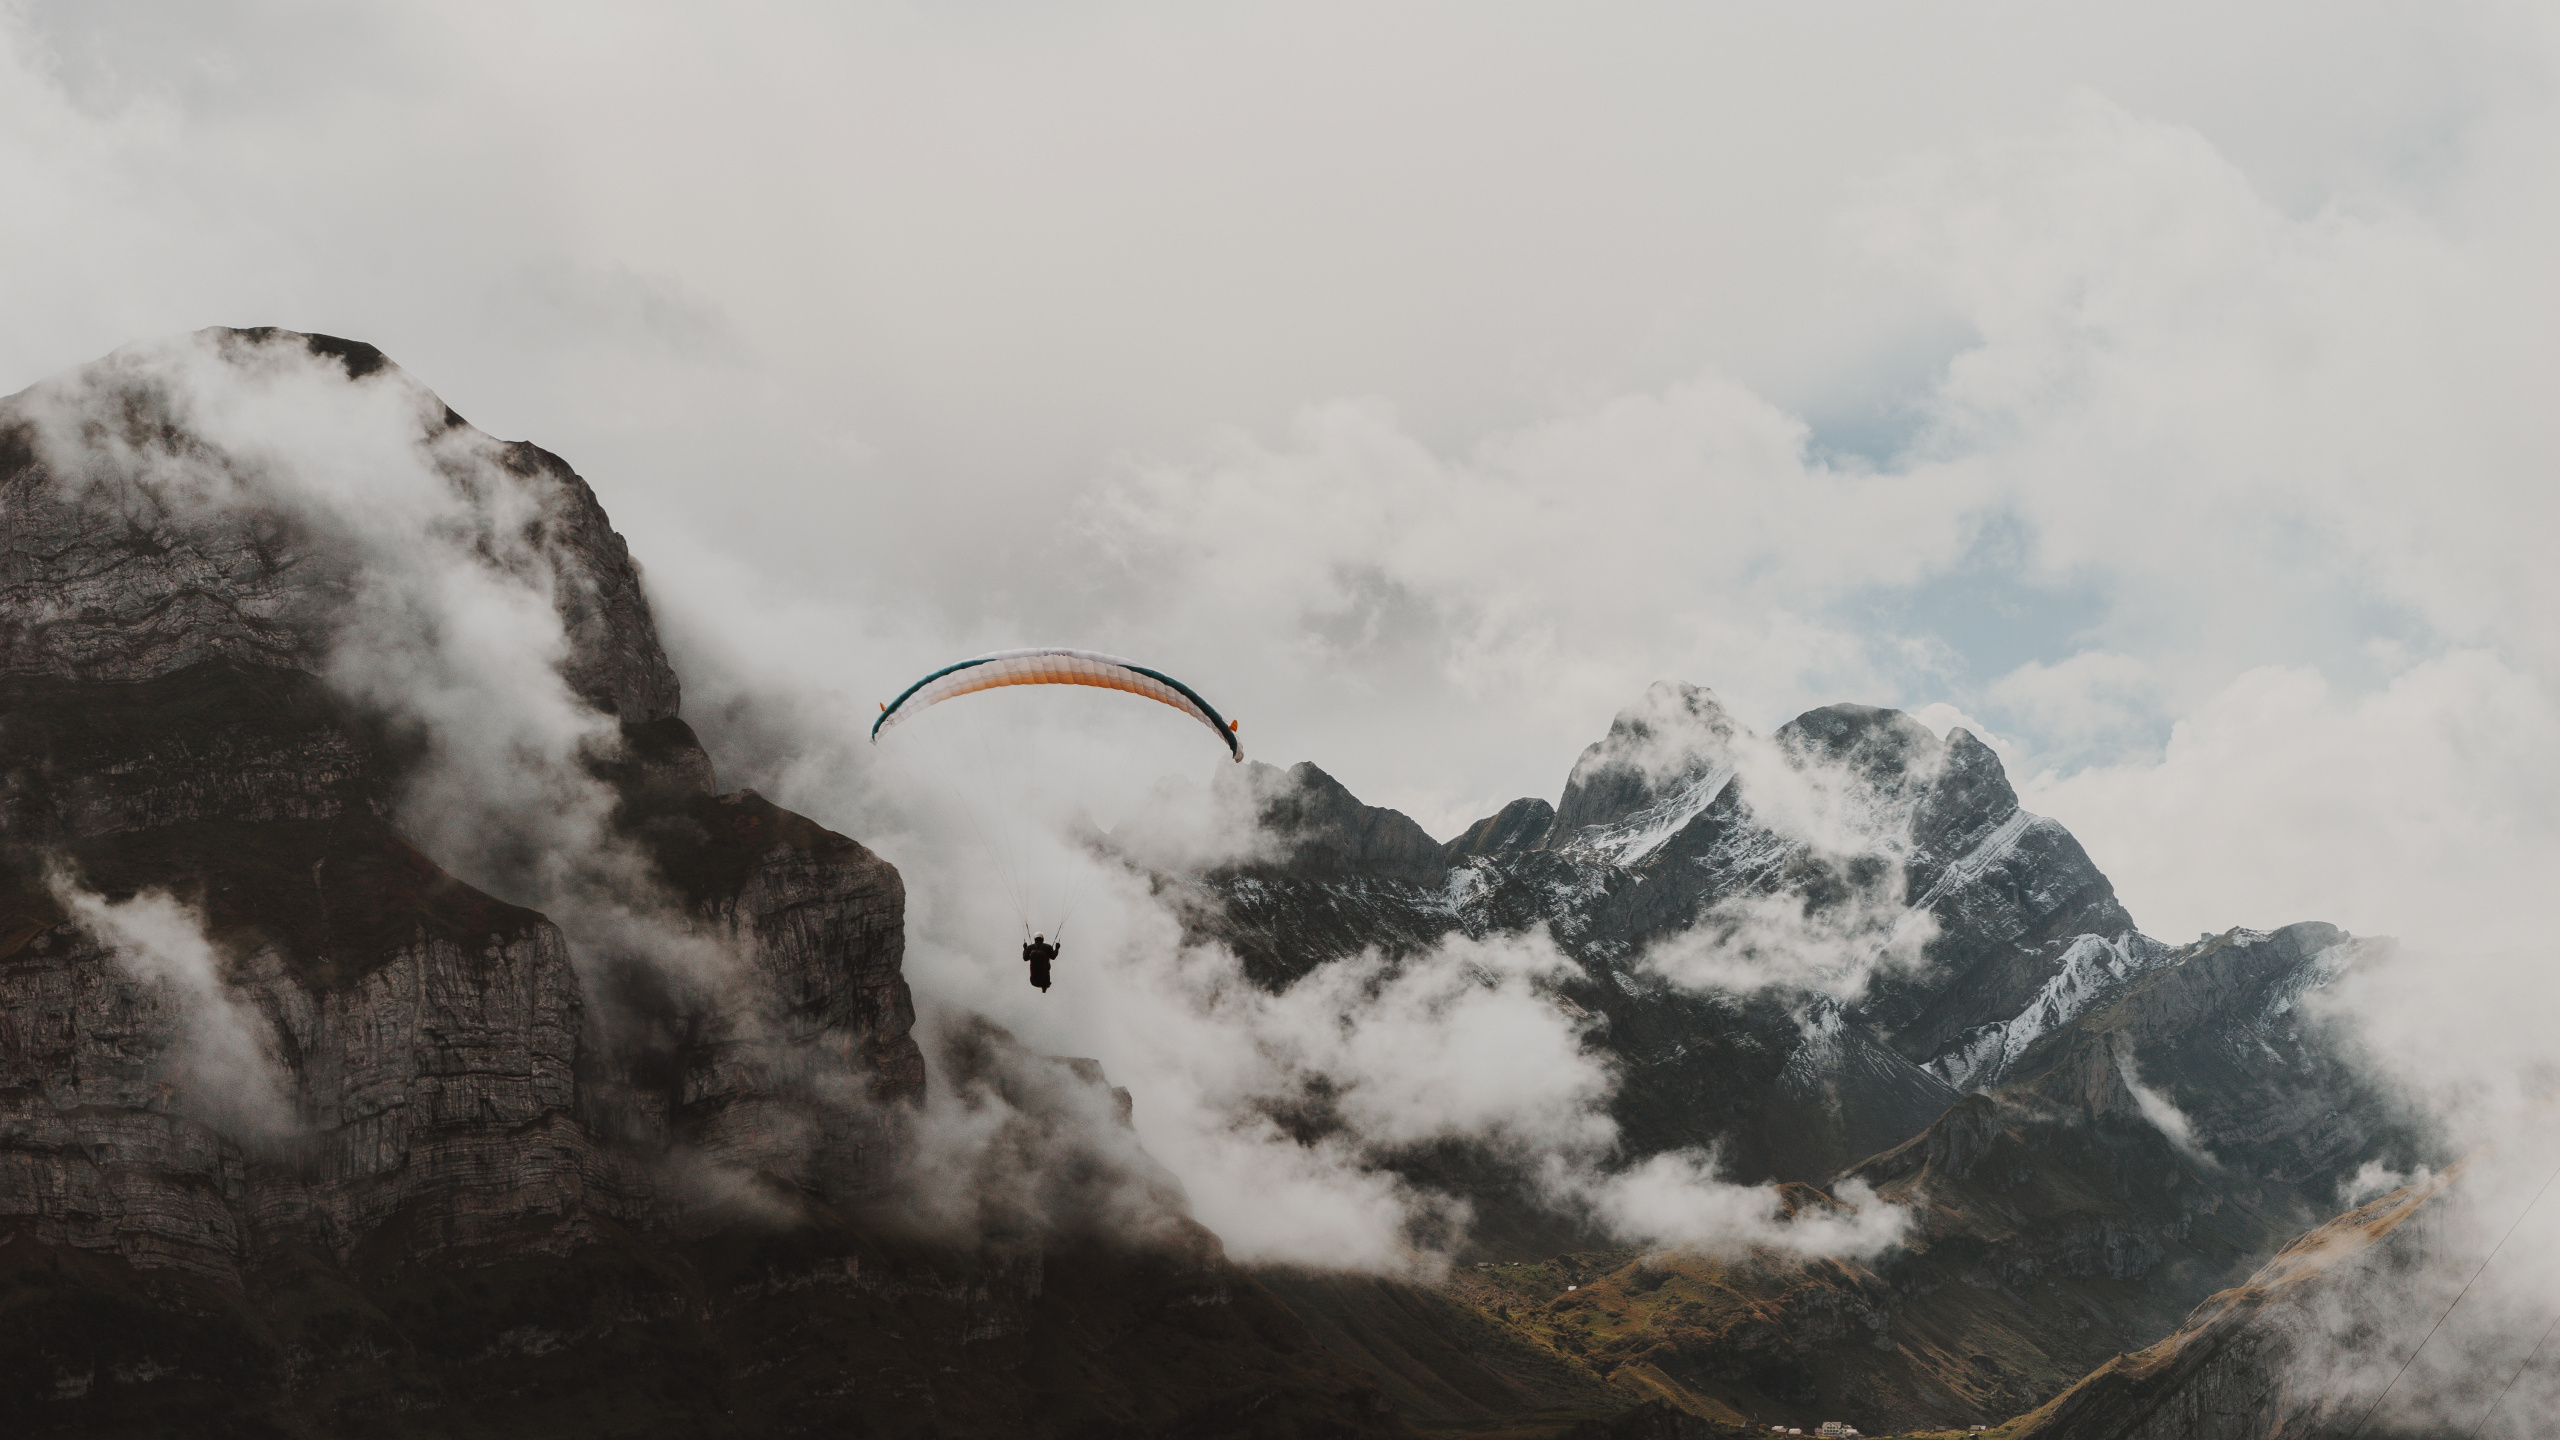 Personne Équitation Parachute Au-dessus de la Montagne Couverte de Neige. Wallpaper in 2560x1440 Resolution